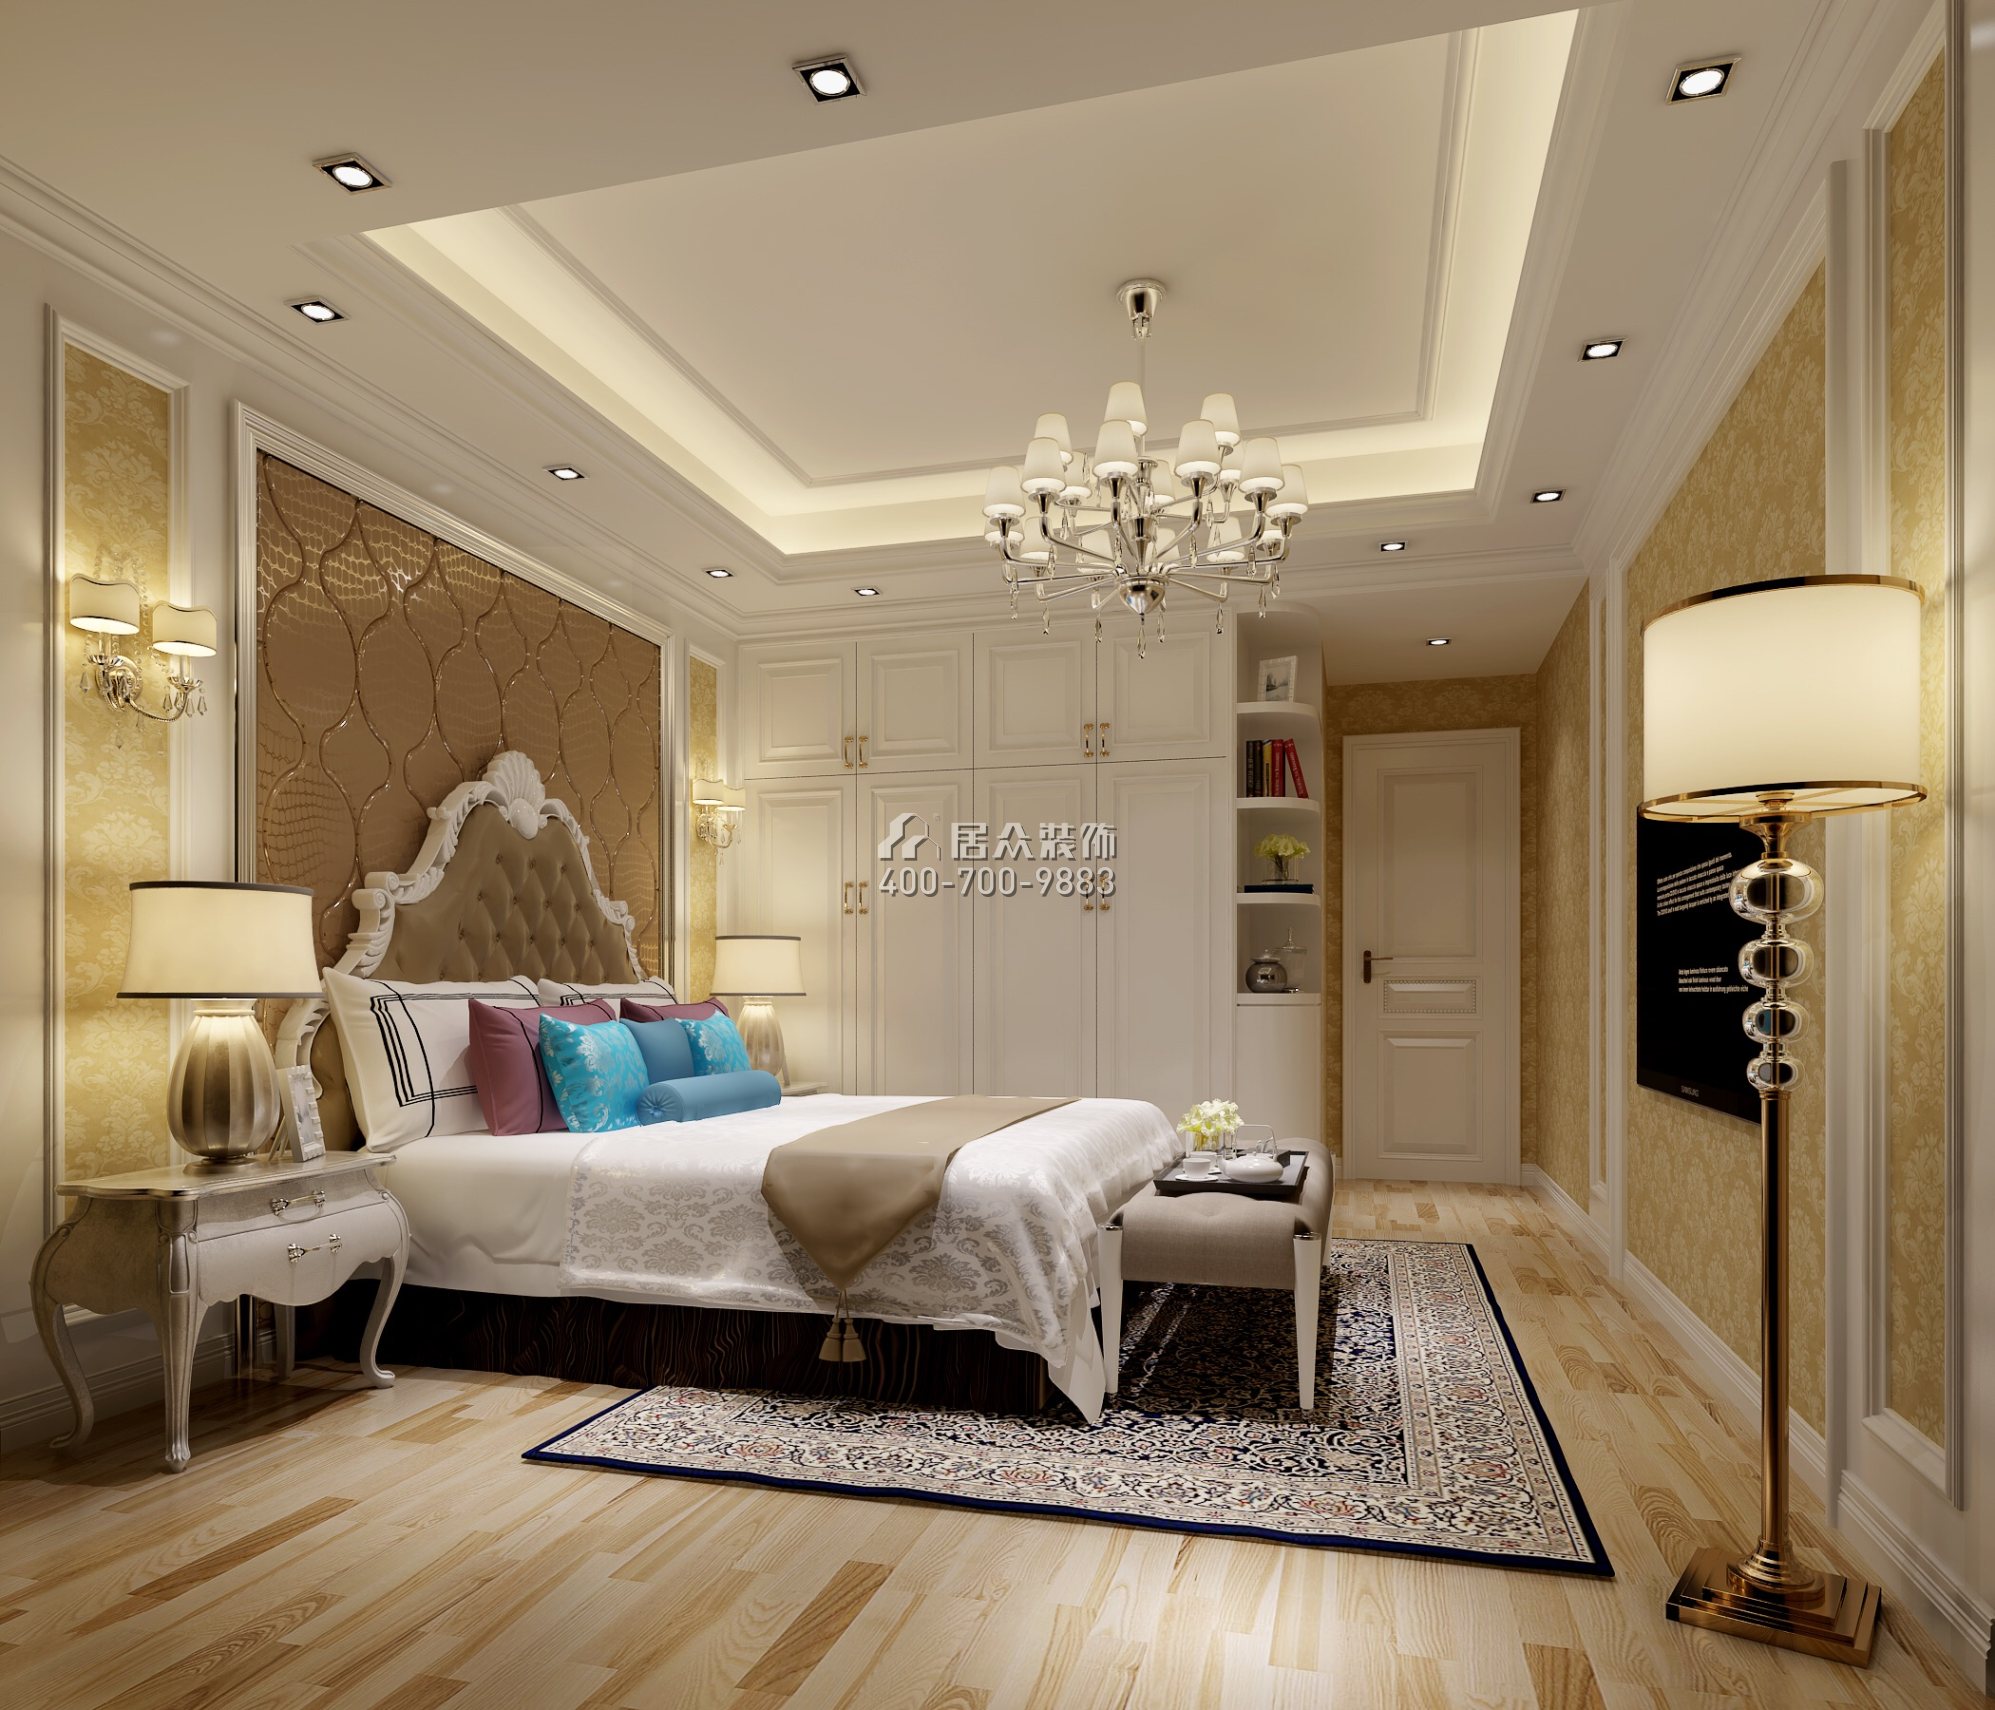 领航城领翔华府130平方米欧式风格平层户型卧室装修效果图